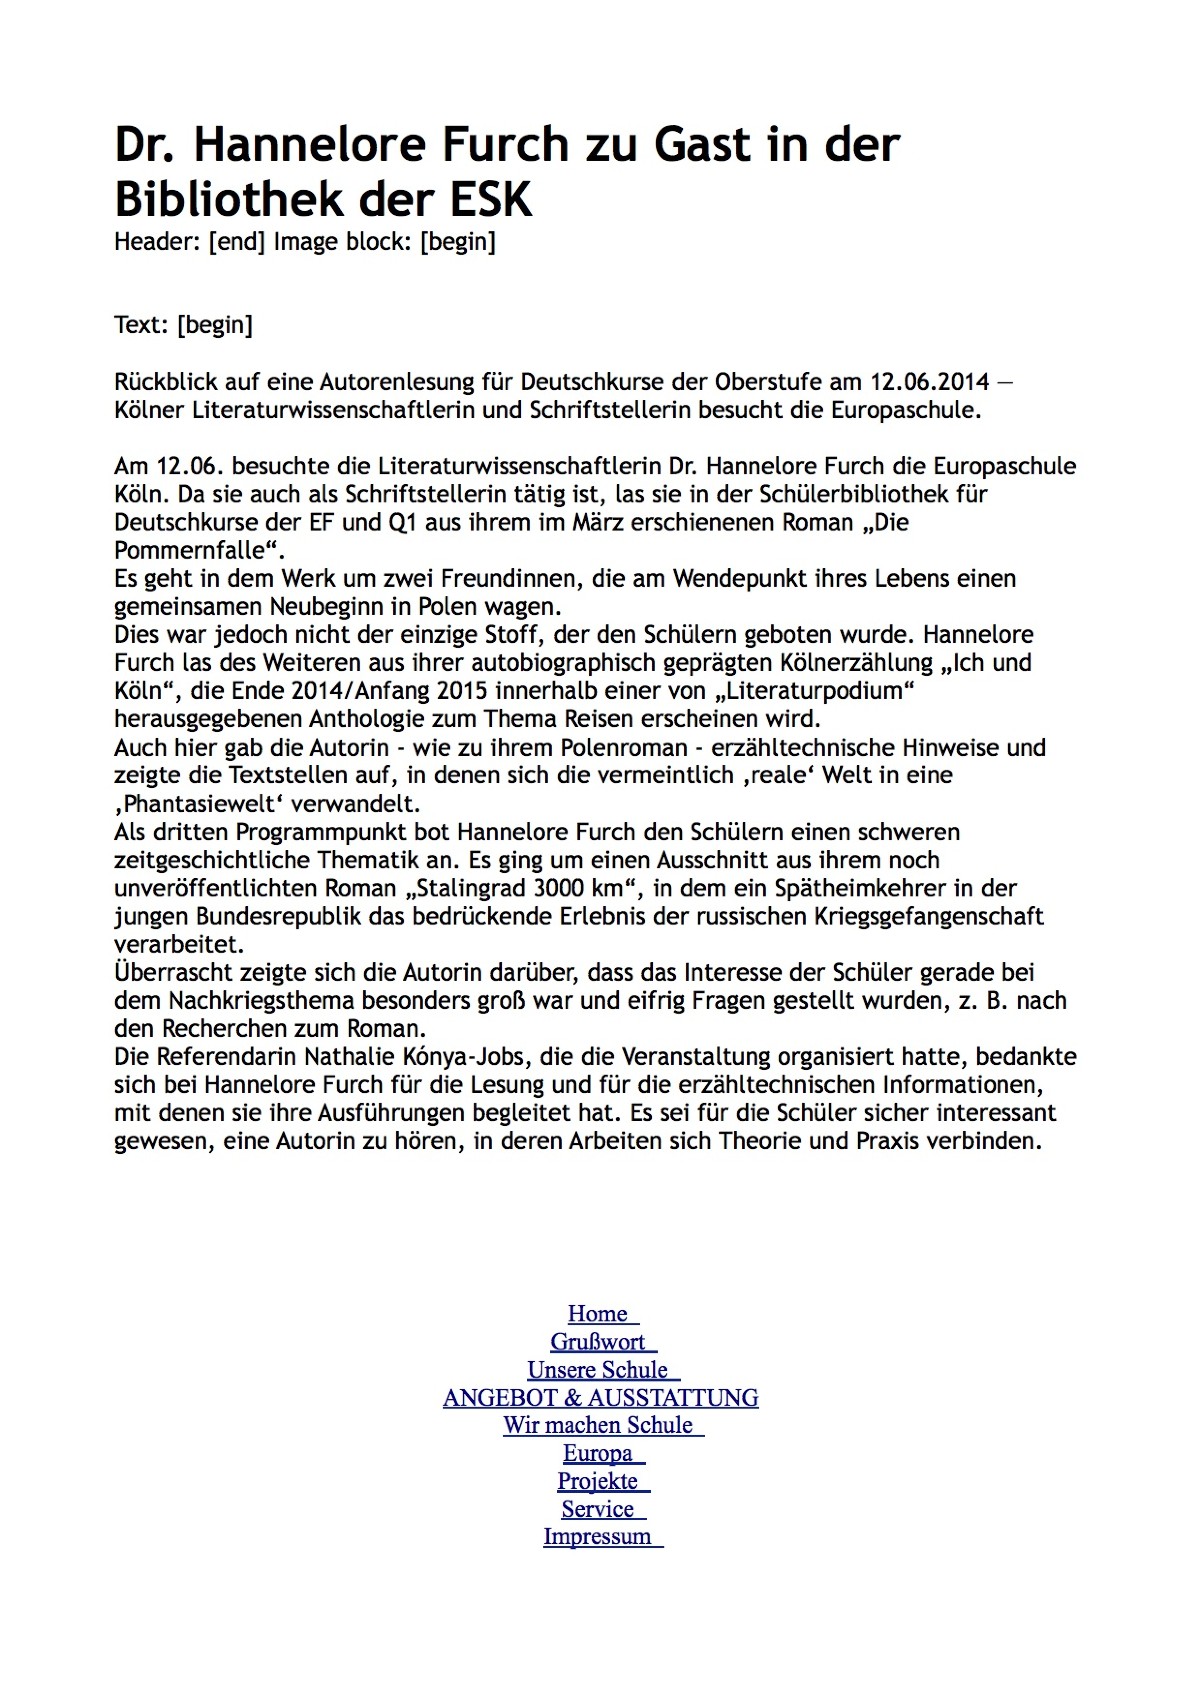 Lesung von Hannelore Furch in der Europaschule Köln am 12.06.2014.